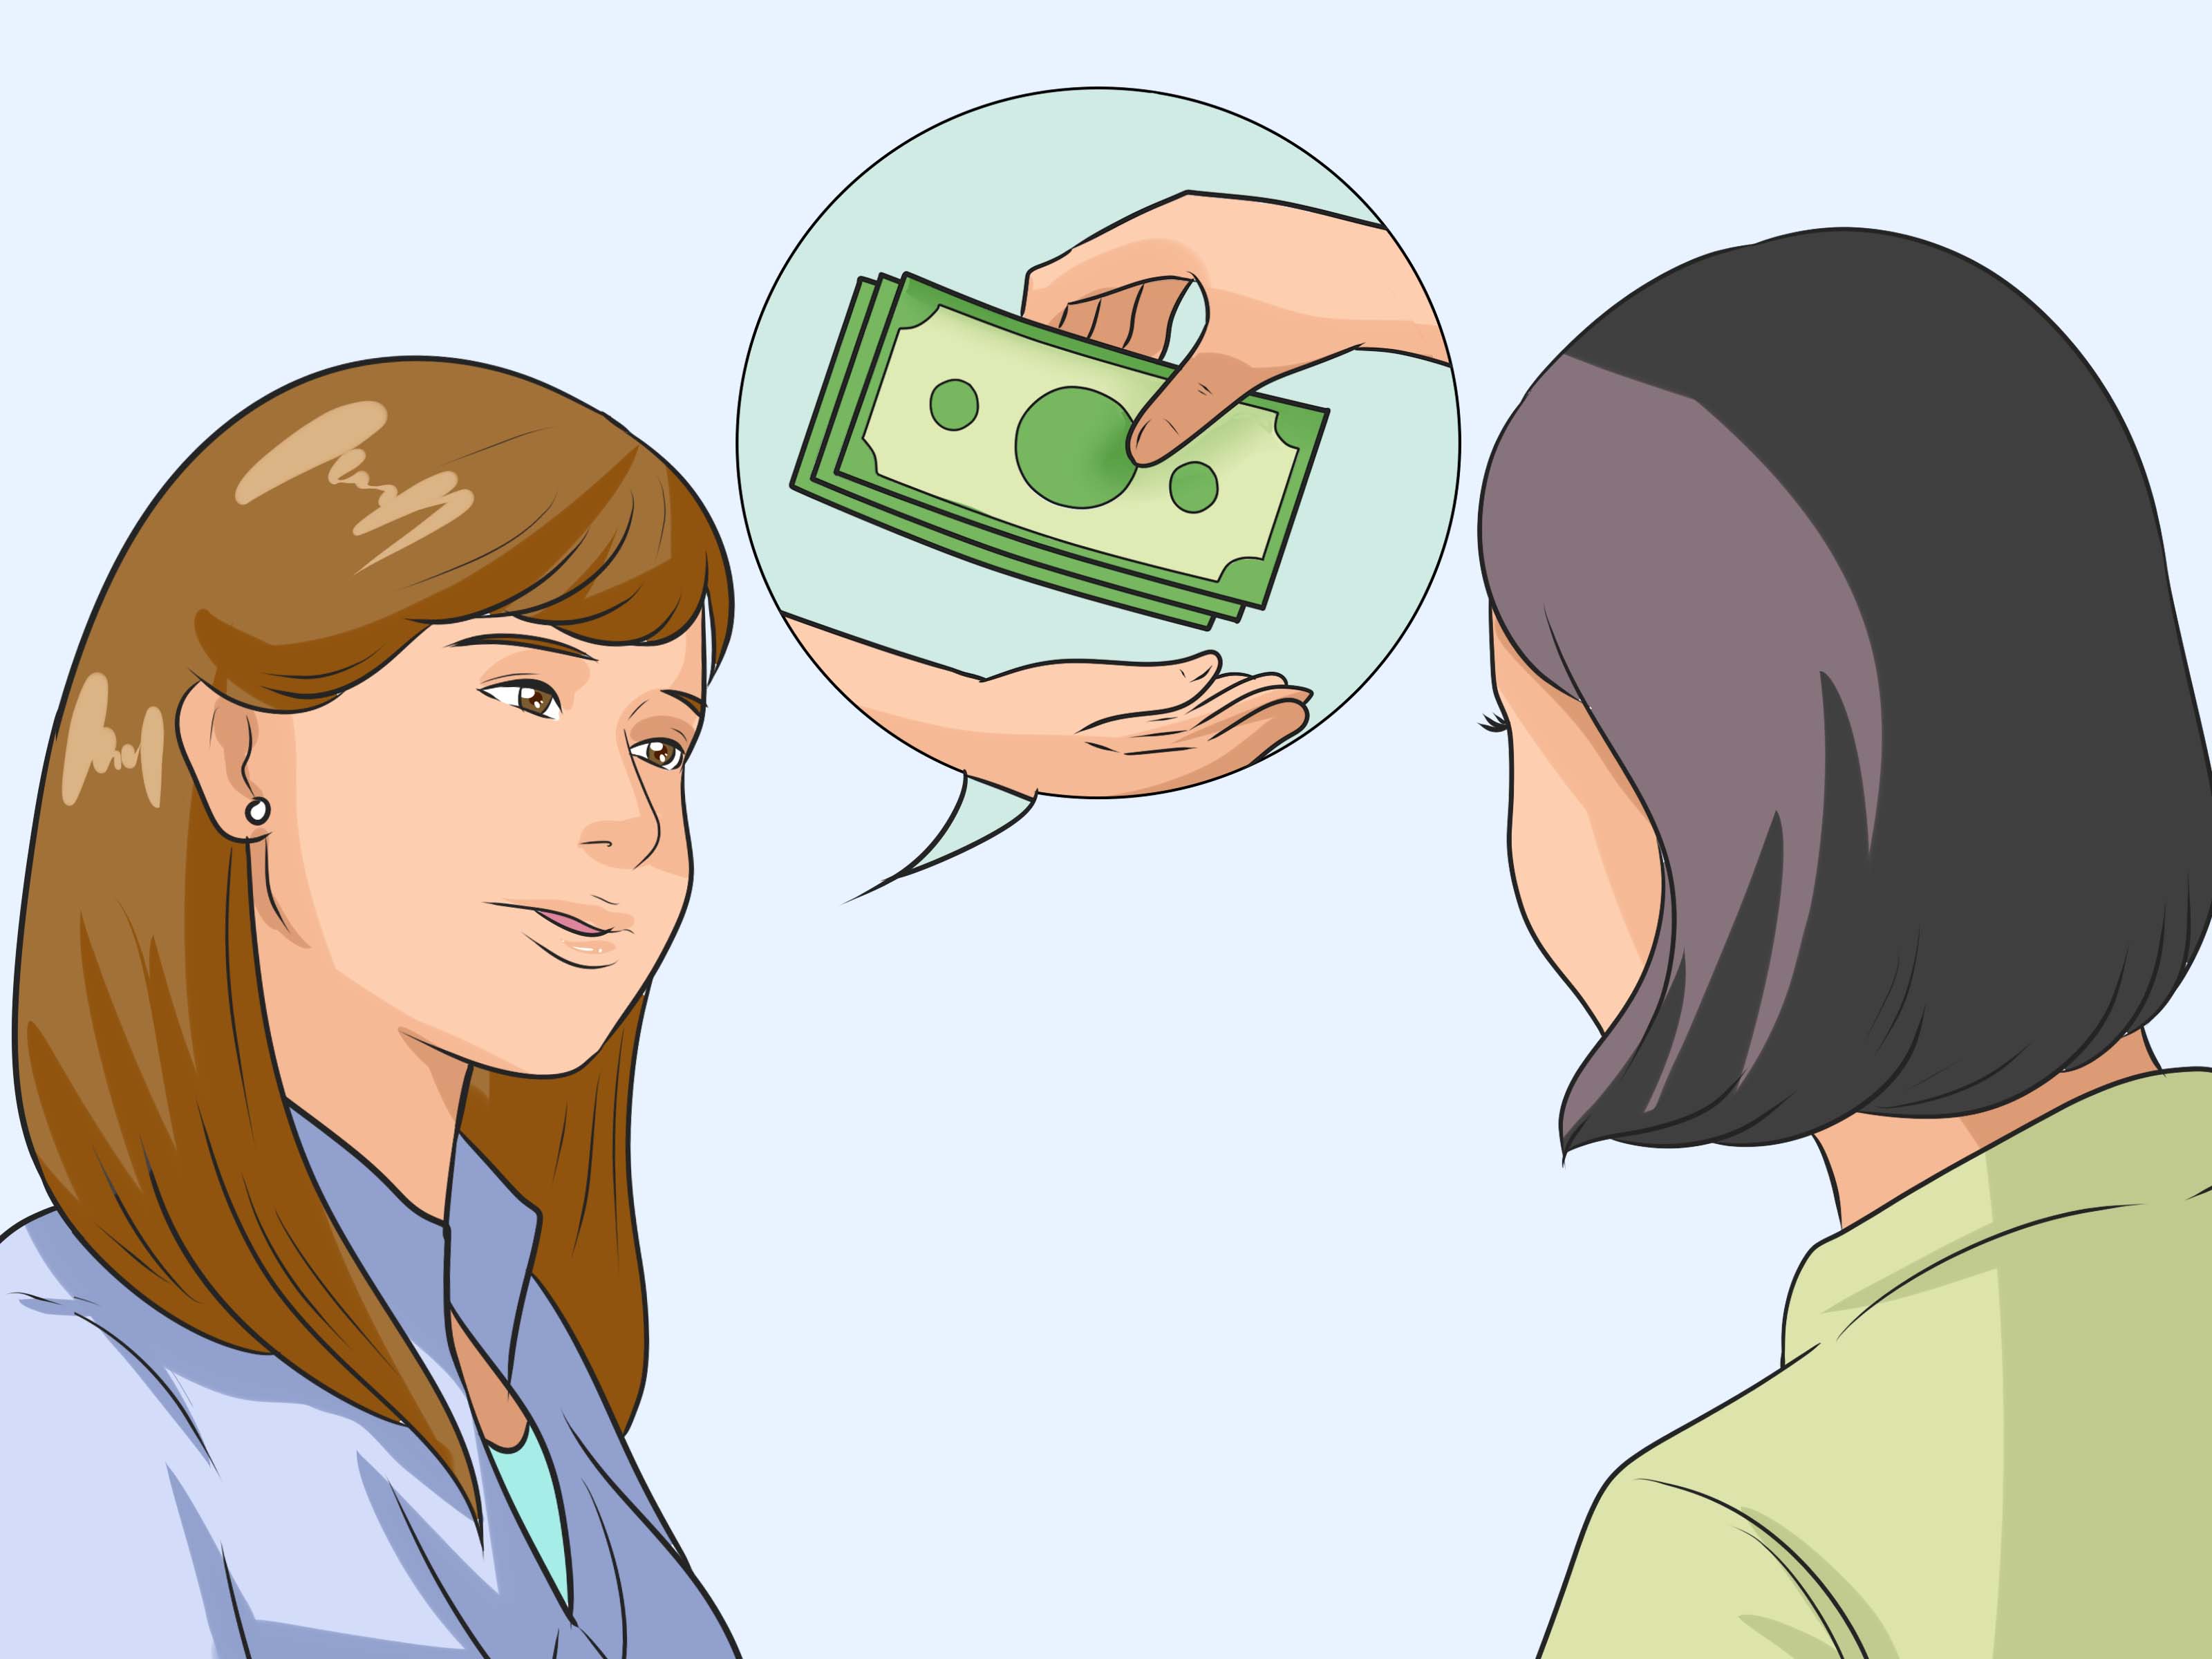 Dve ženy sa rozprávajú o pôžičke